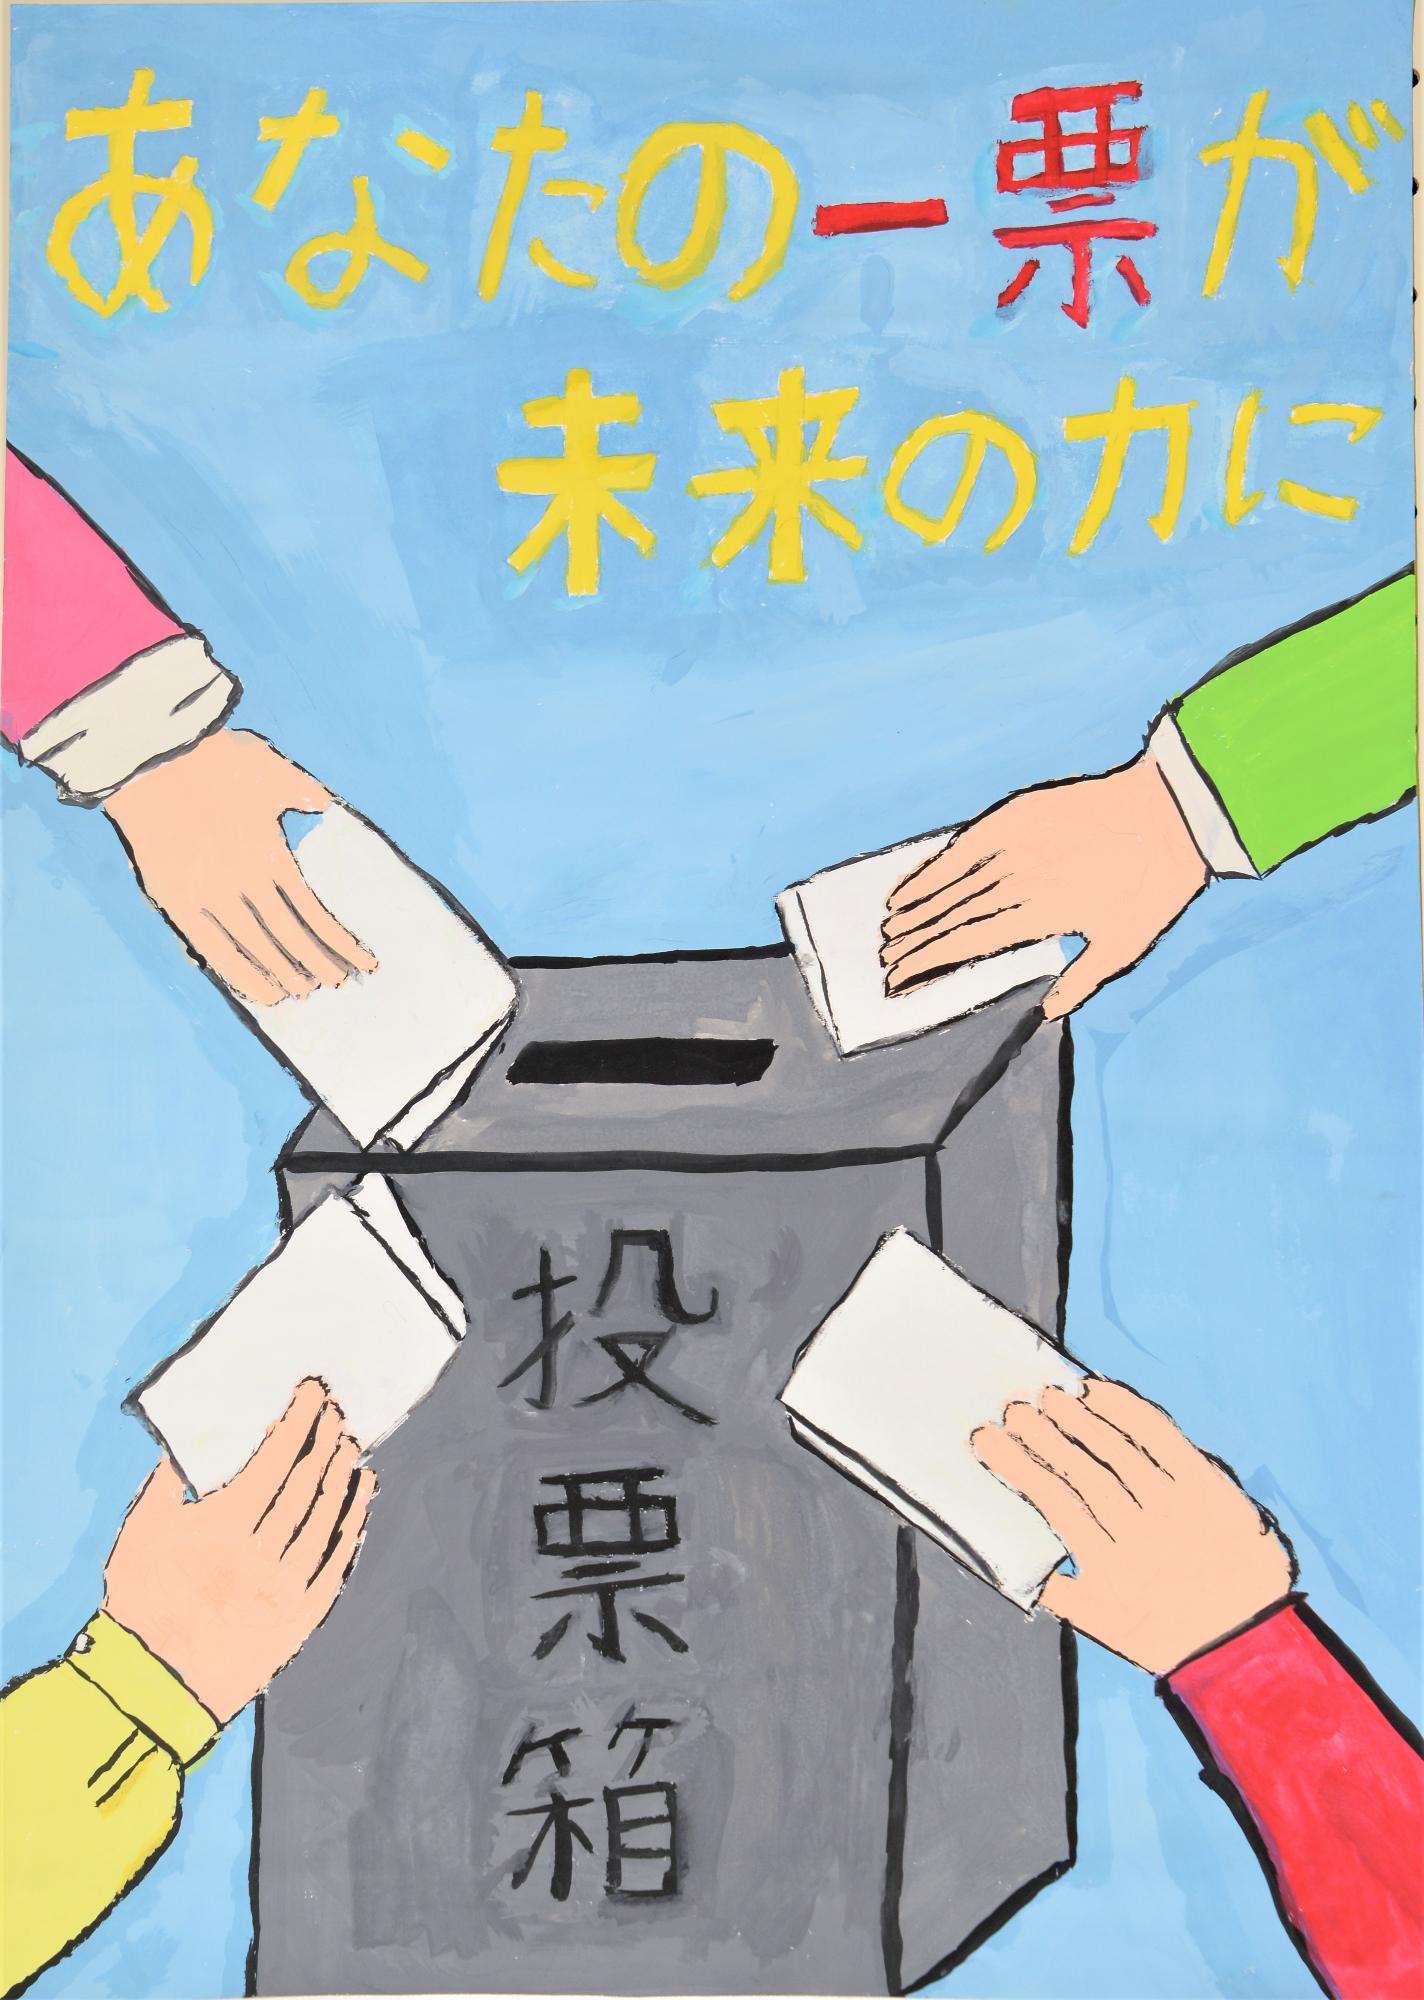 「あなたの一票が未来の力に」4つの腕が投票箱に伸びて投票しているポスター